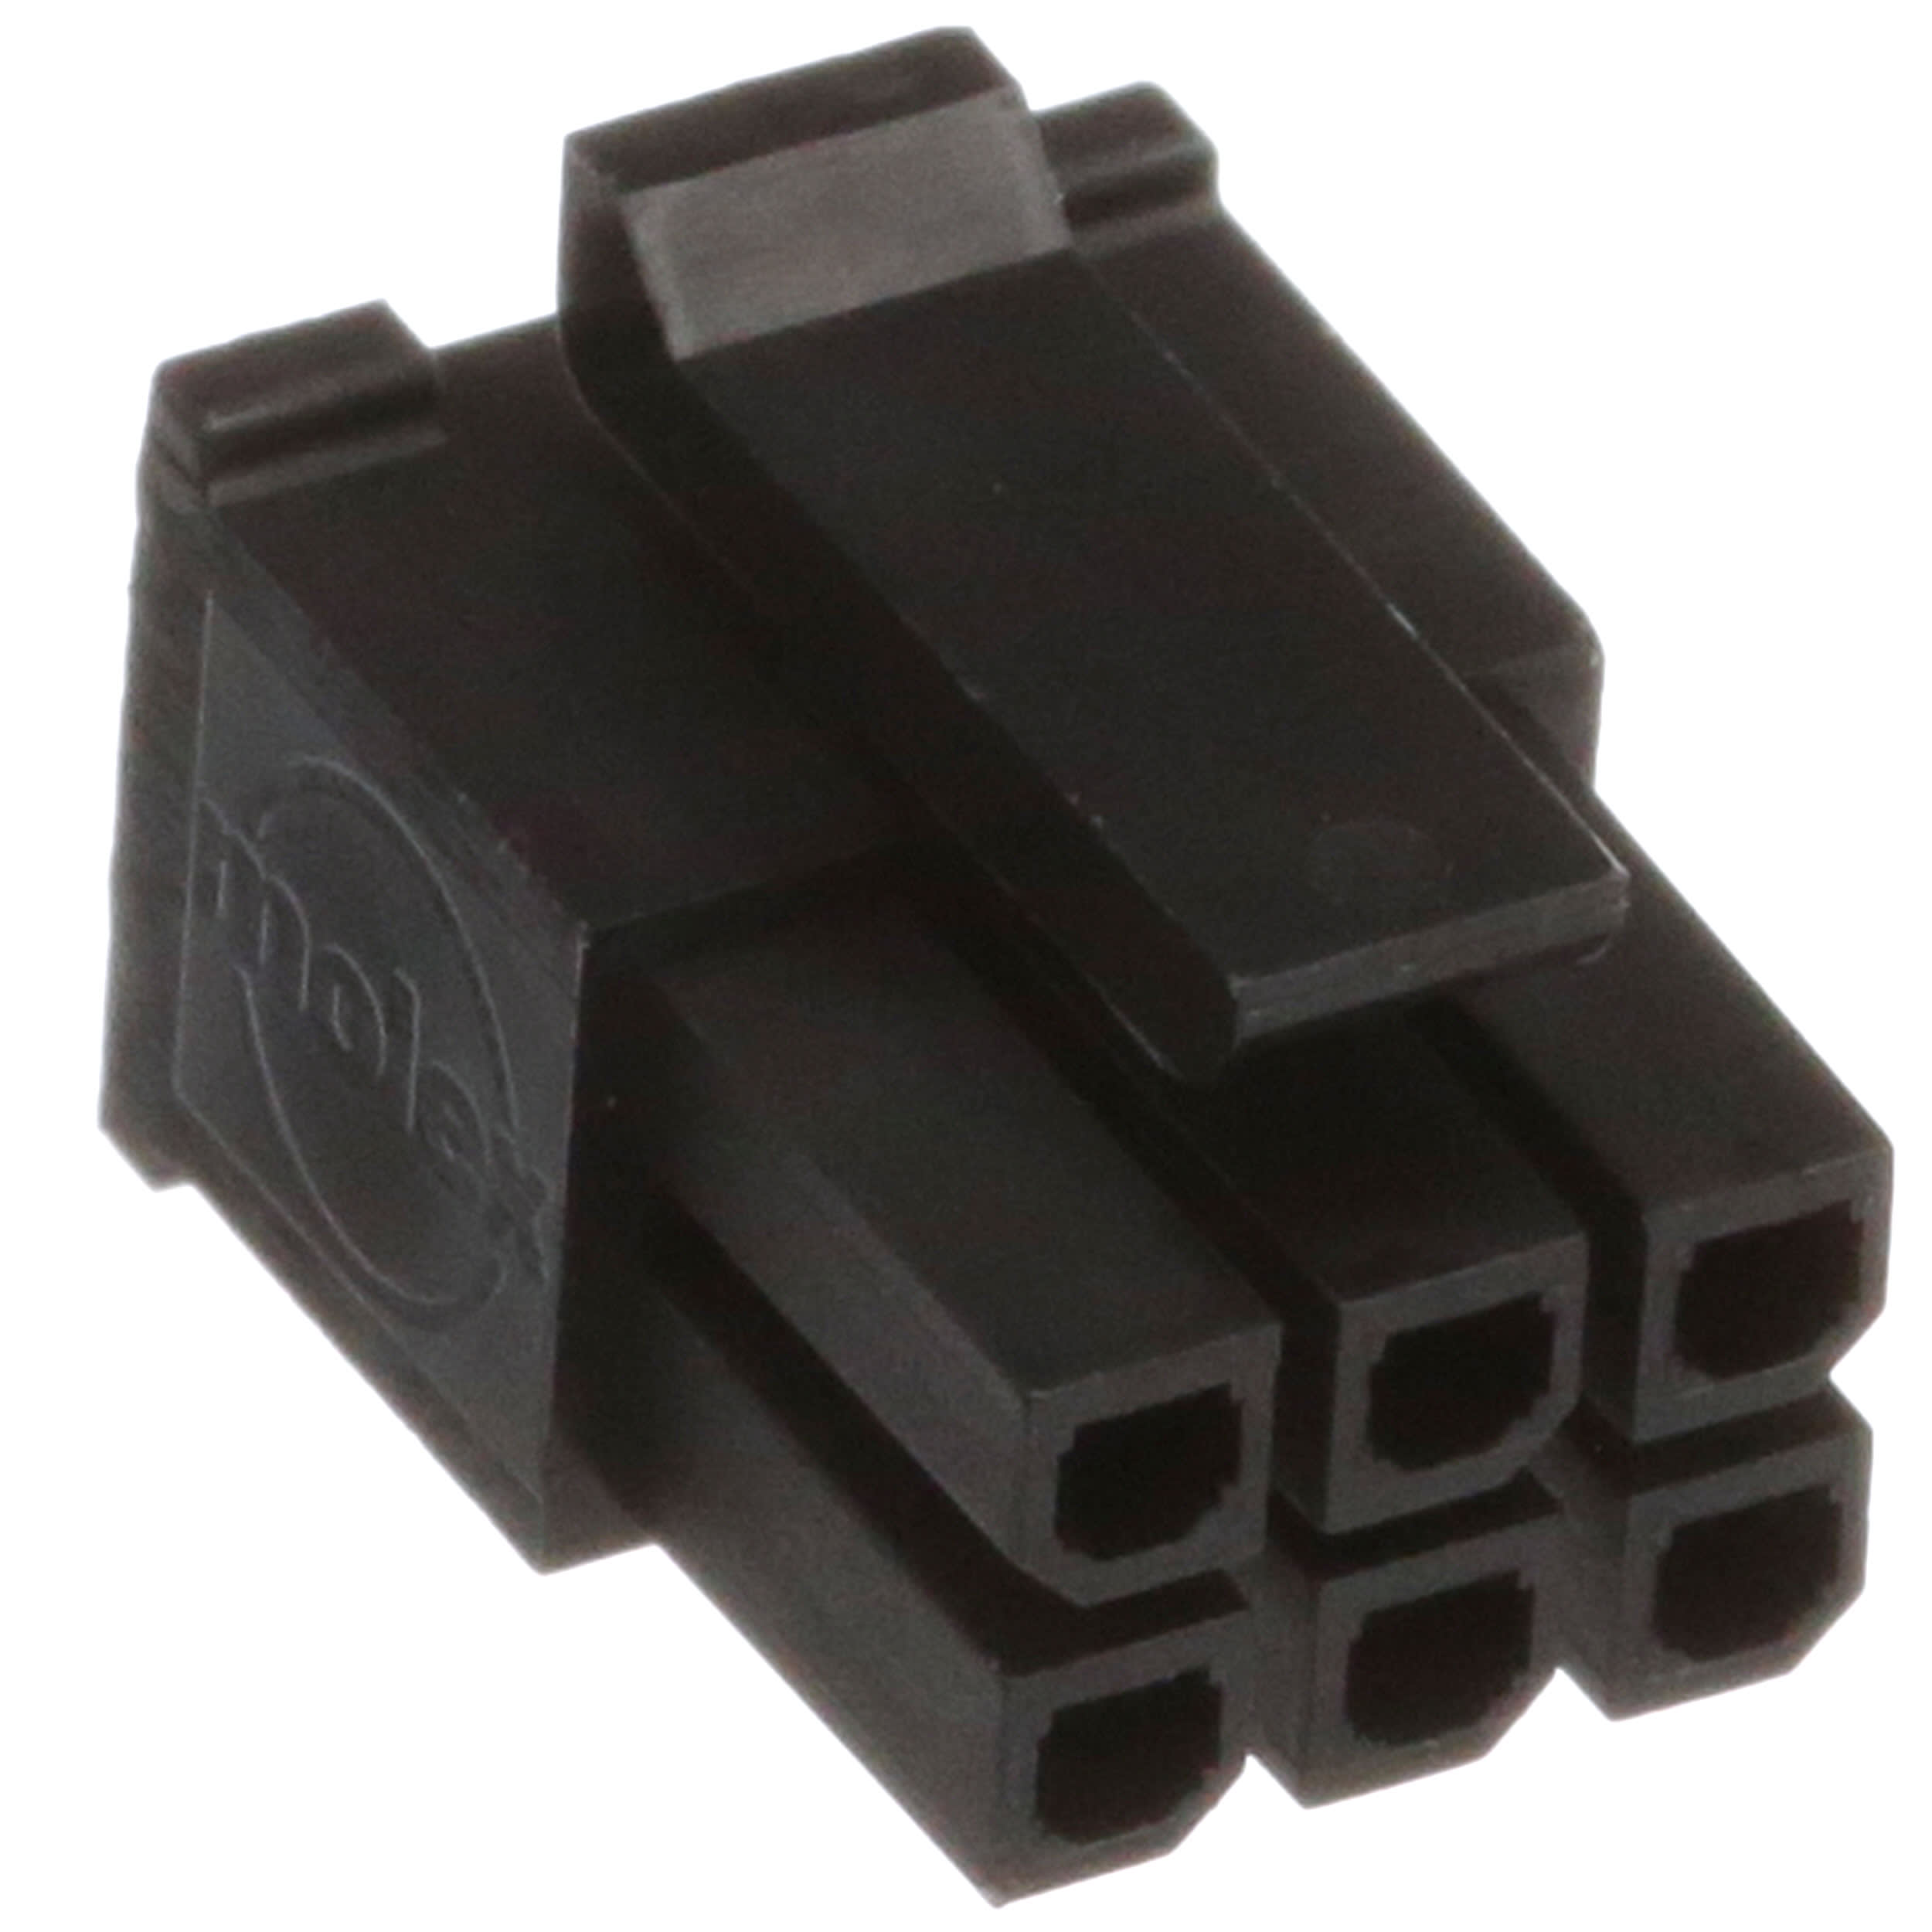 Molex Micro Fit Steckverbinder 6 polig mit 6 Kontakte  zweireihig 43025-0600 